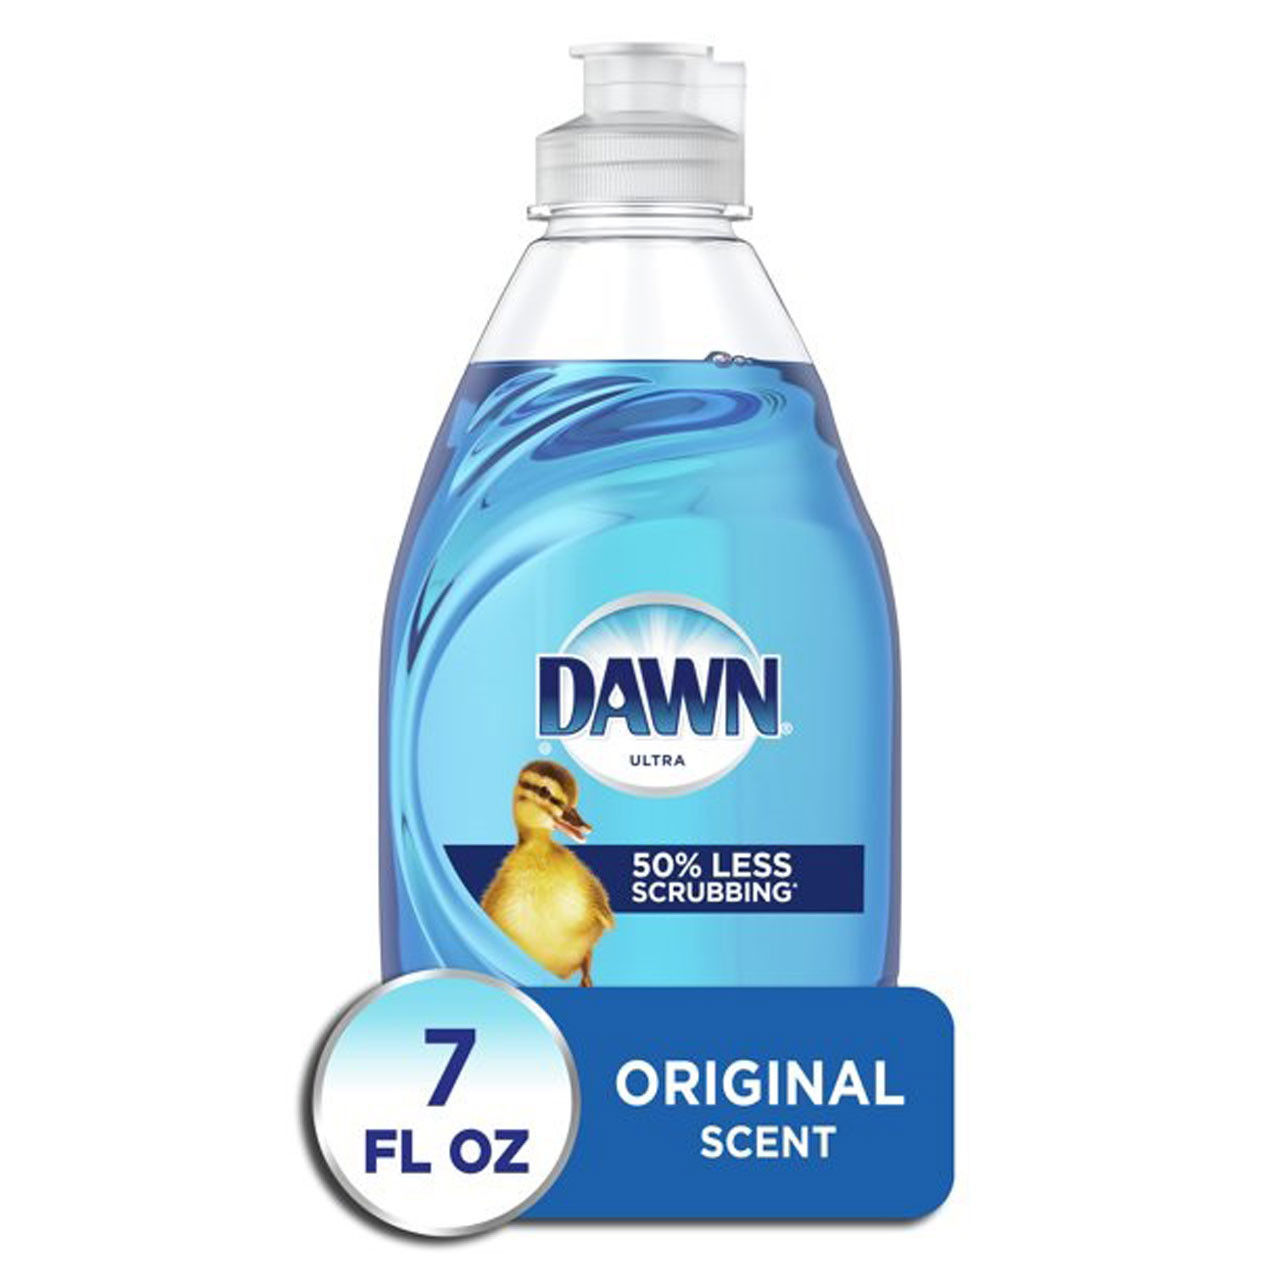 What's the best way to utilize the Dawn Liquid Dishwashing Detergent 7oz bottles?